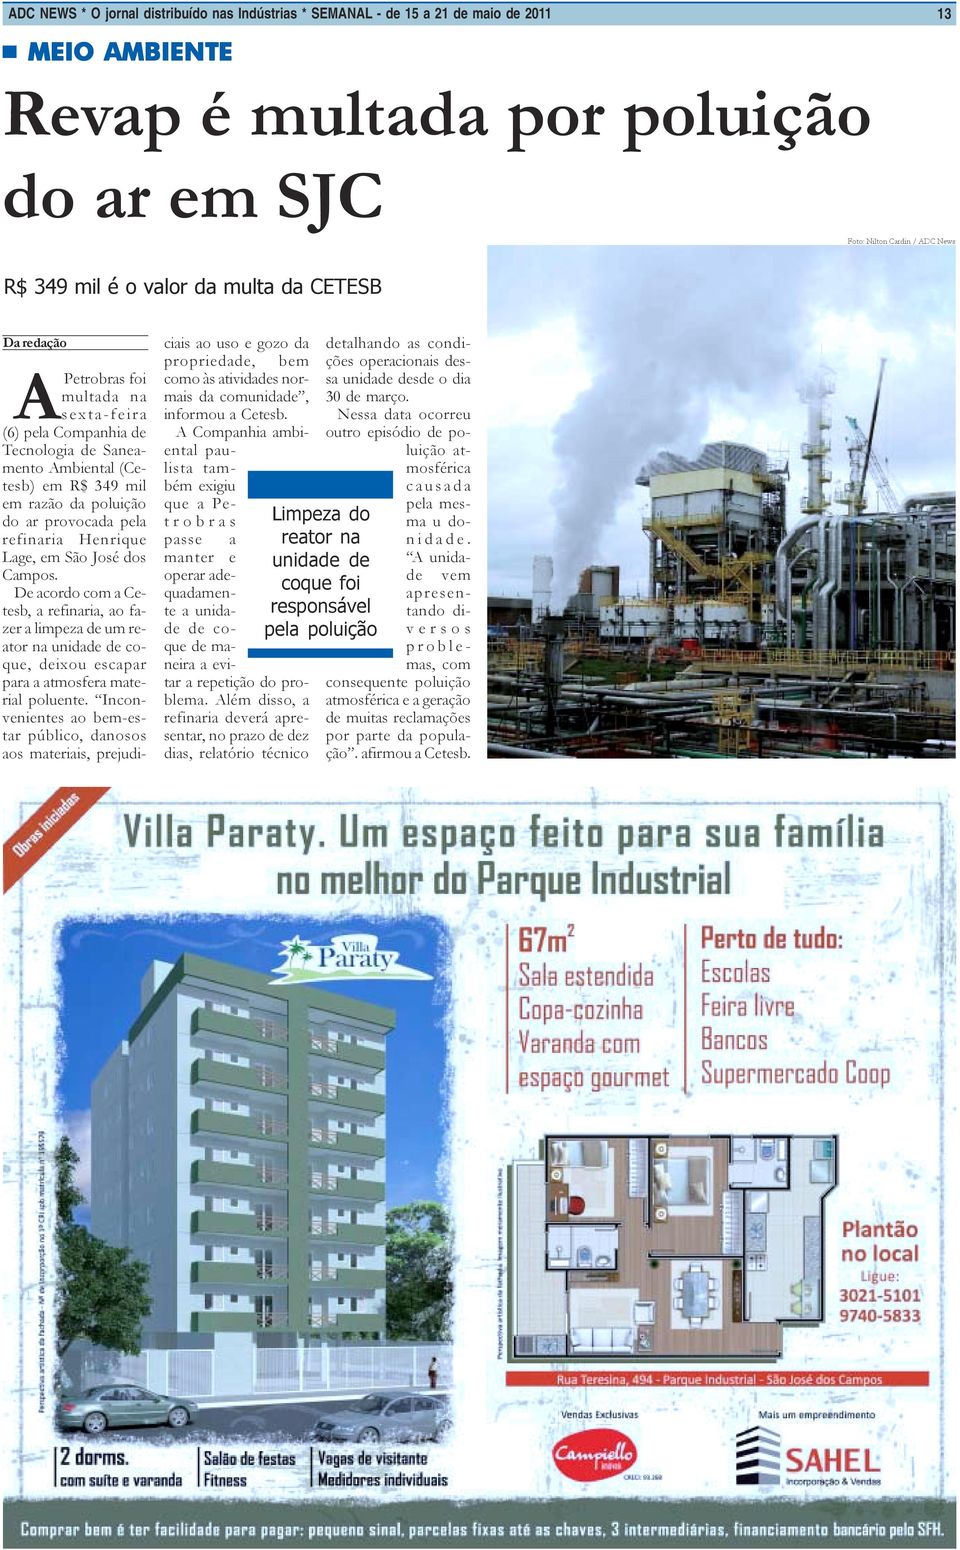 Henrique Lage, em São José dos Campos. De acordo com a Cetesb, a refinaria, ao fazer a limpeza de um reator na unidade de coque, deixou escapar para a atmosfera material poluente.